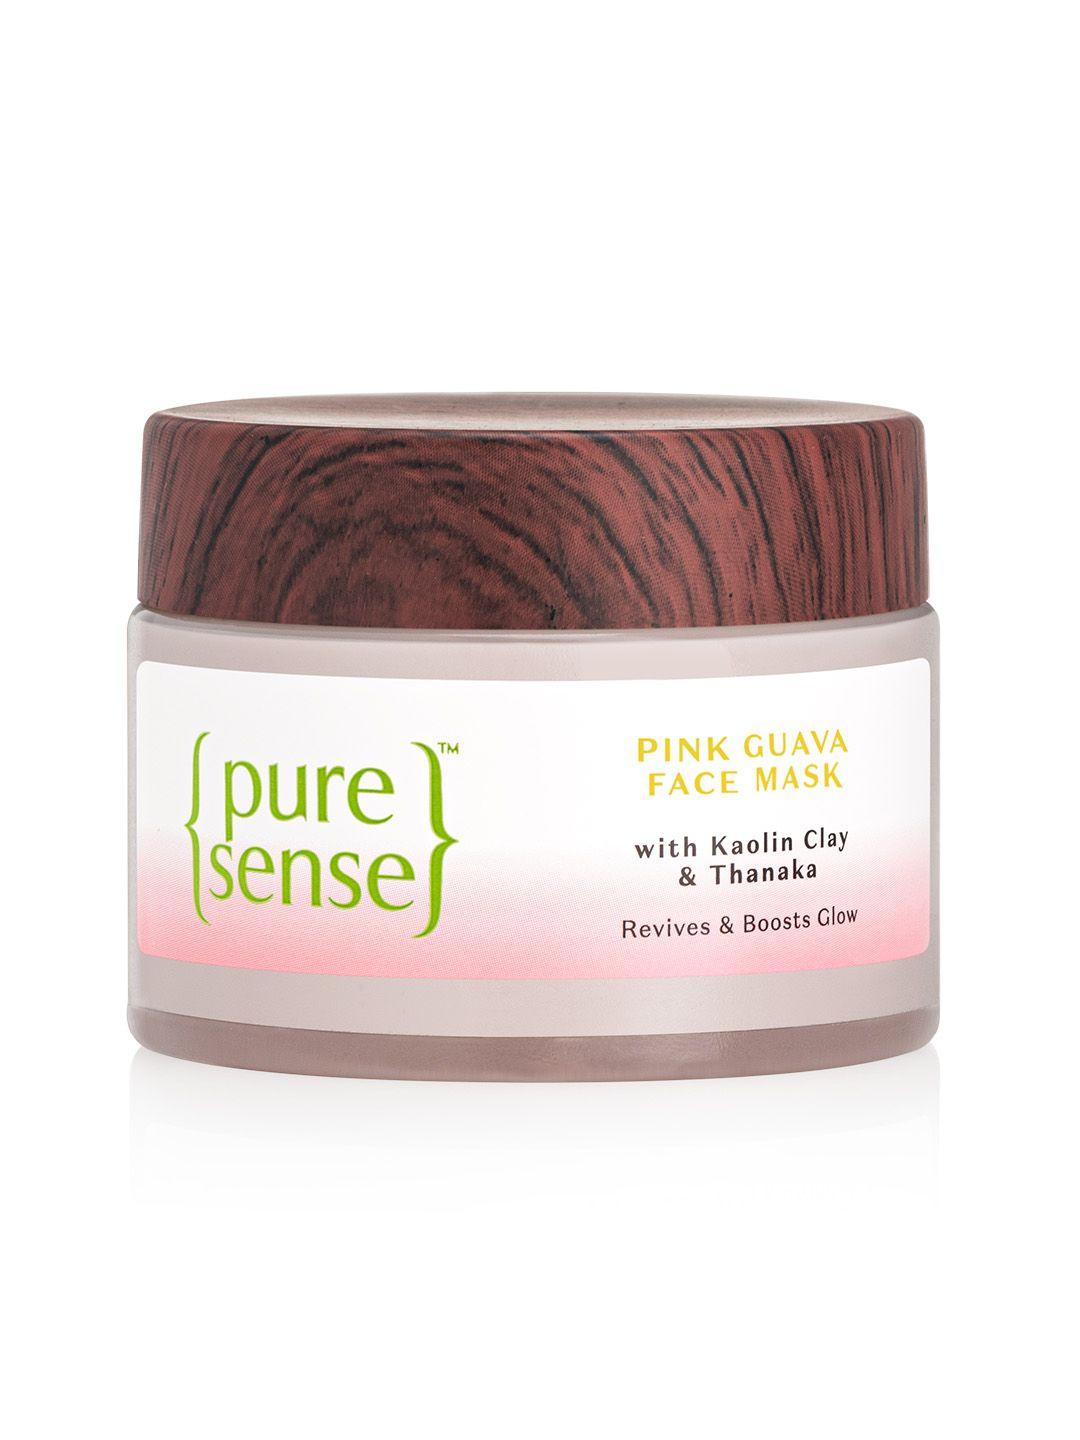 pure sense pink guava face mask with kaolin clay & thanaka - 65 g